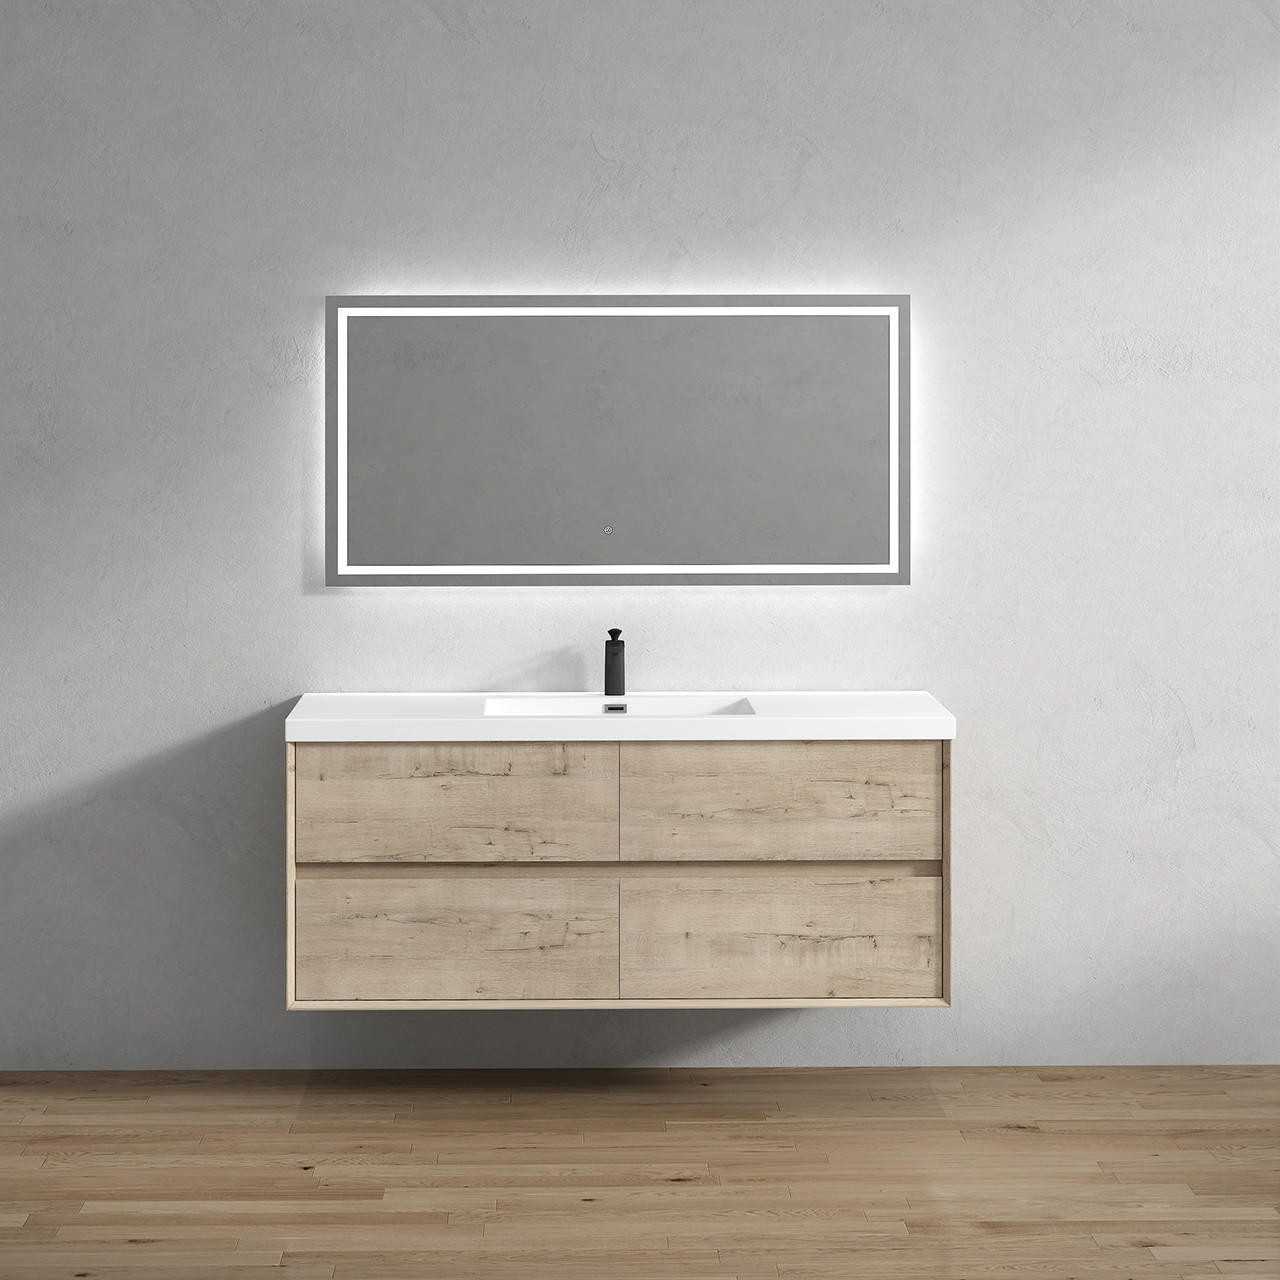 Kingdee 60" Floating Bathroom Vanity in Light Oak | Moreno Bath Modern Coastal Bathroom Vanities